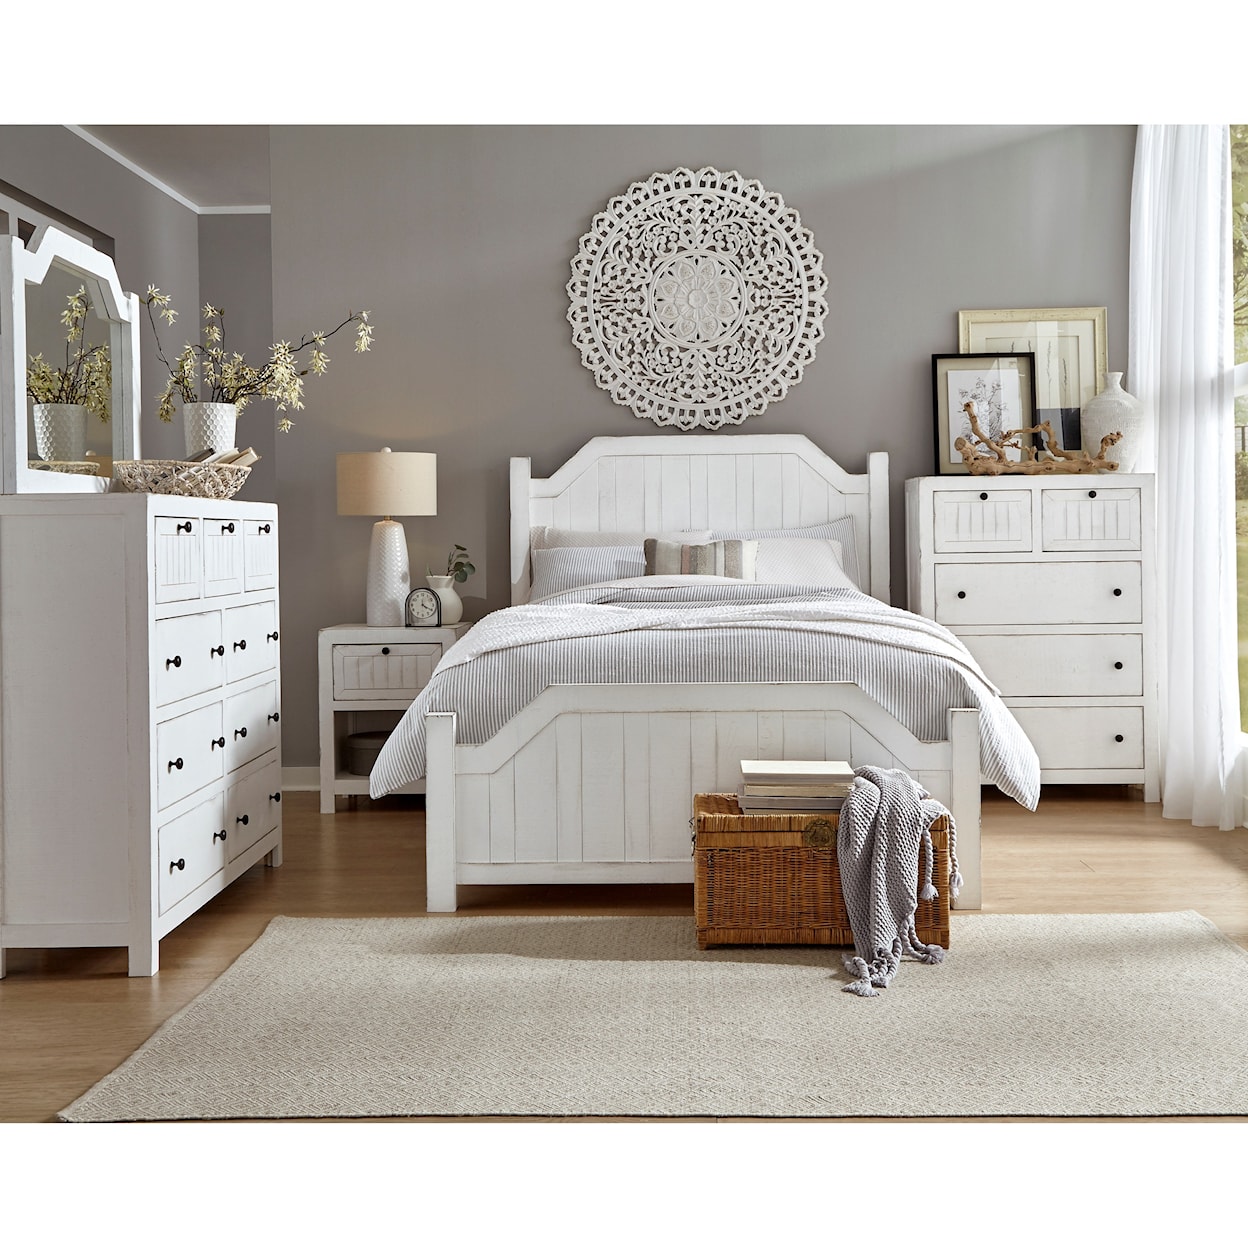 Progressive Furniture Elmhurst Queen Bedroom Group